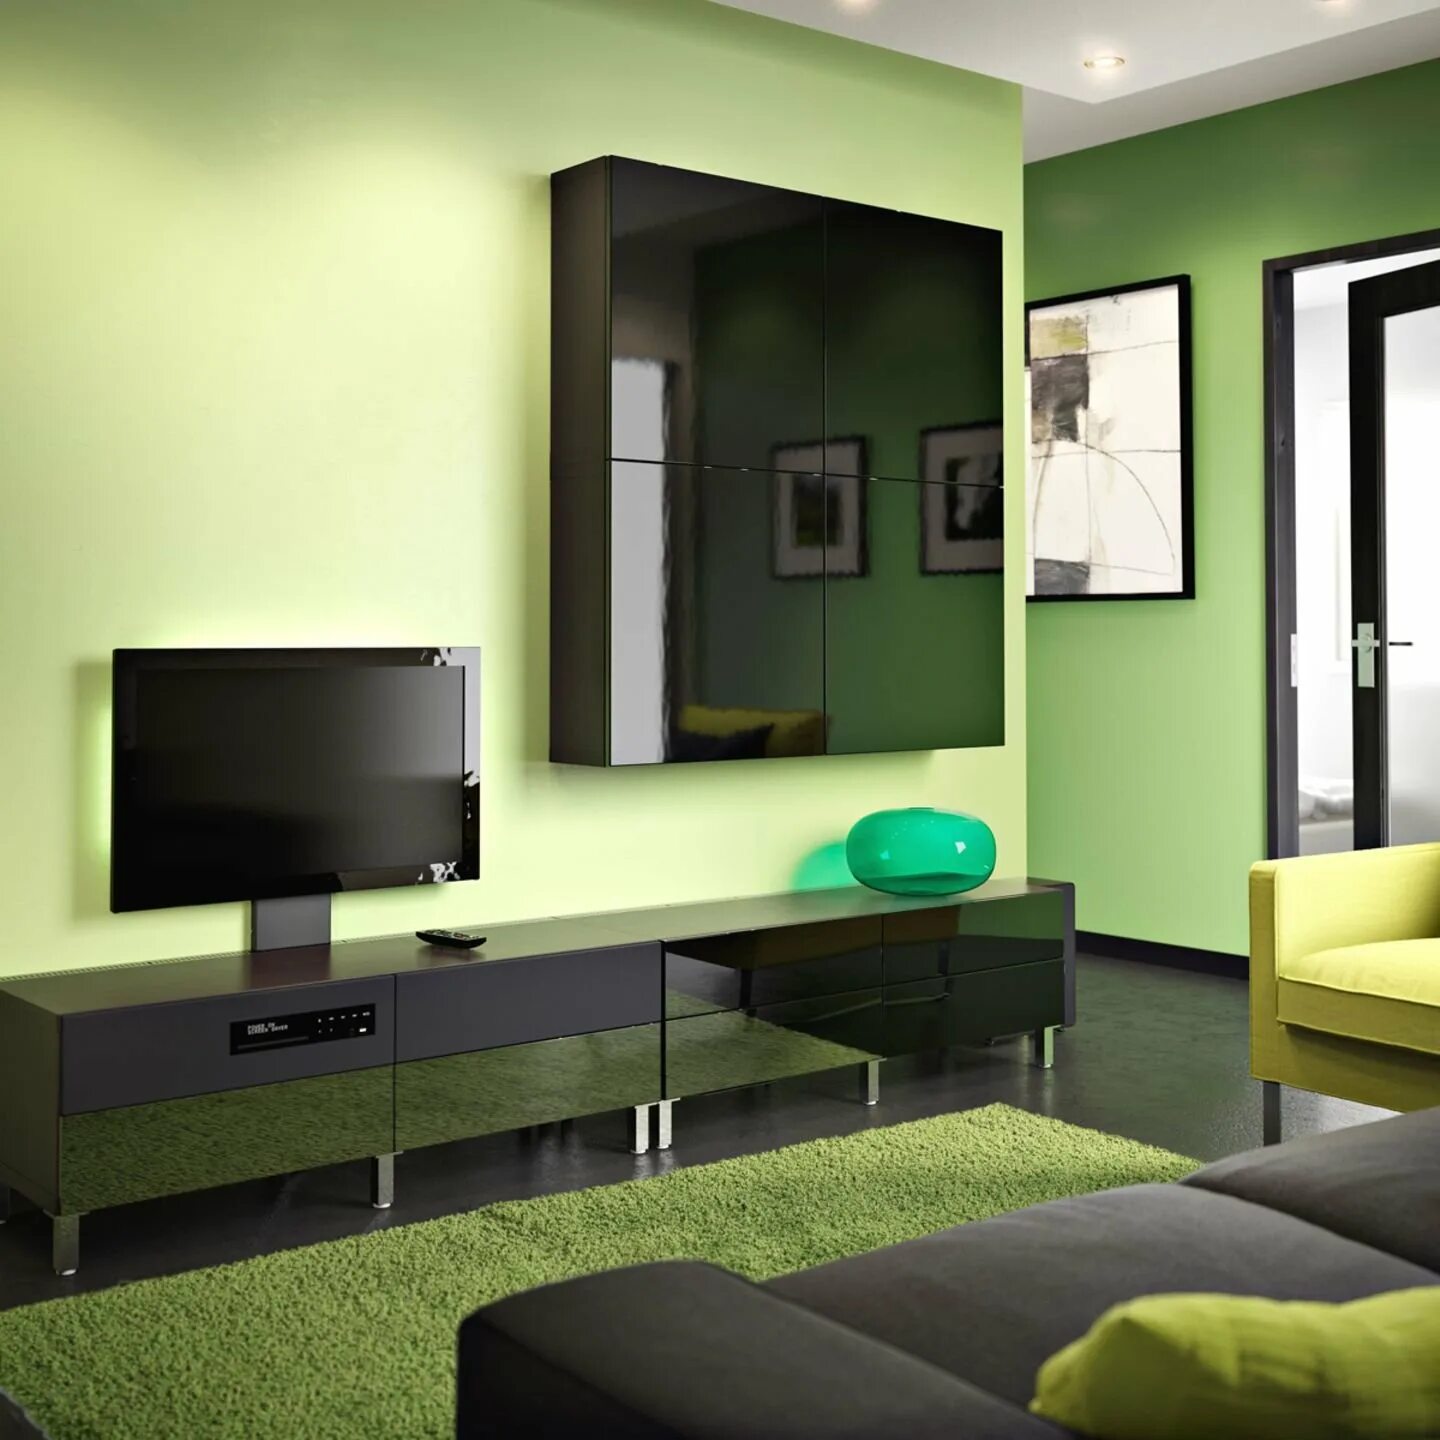 Гостиная в салатовых тонах. Зеленые стены в гостиной. Гостиная с зелеными стенами. Гостиная в зеленых тонах. Сочетание цвета мебели в стенами